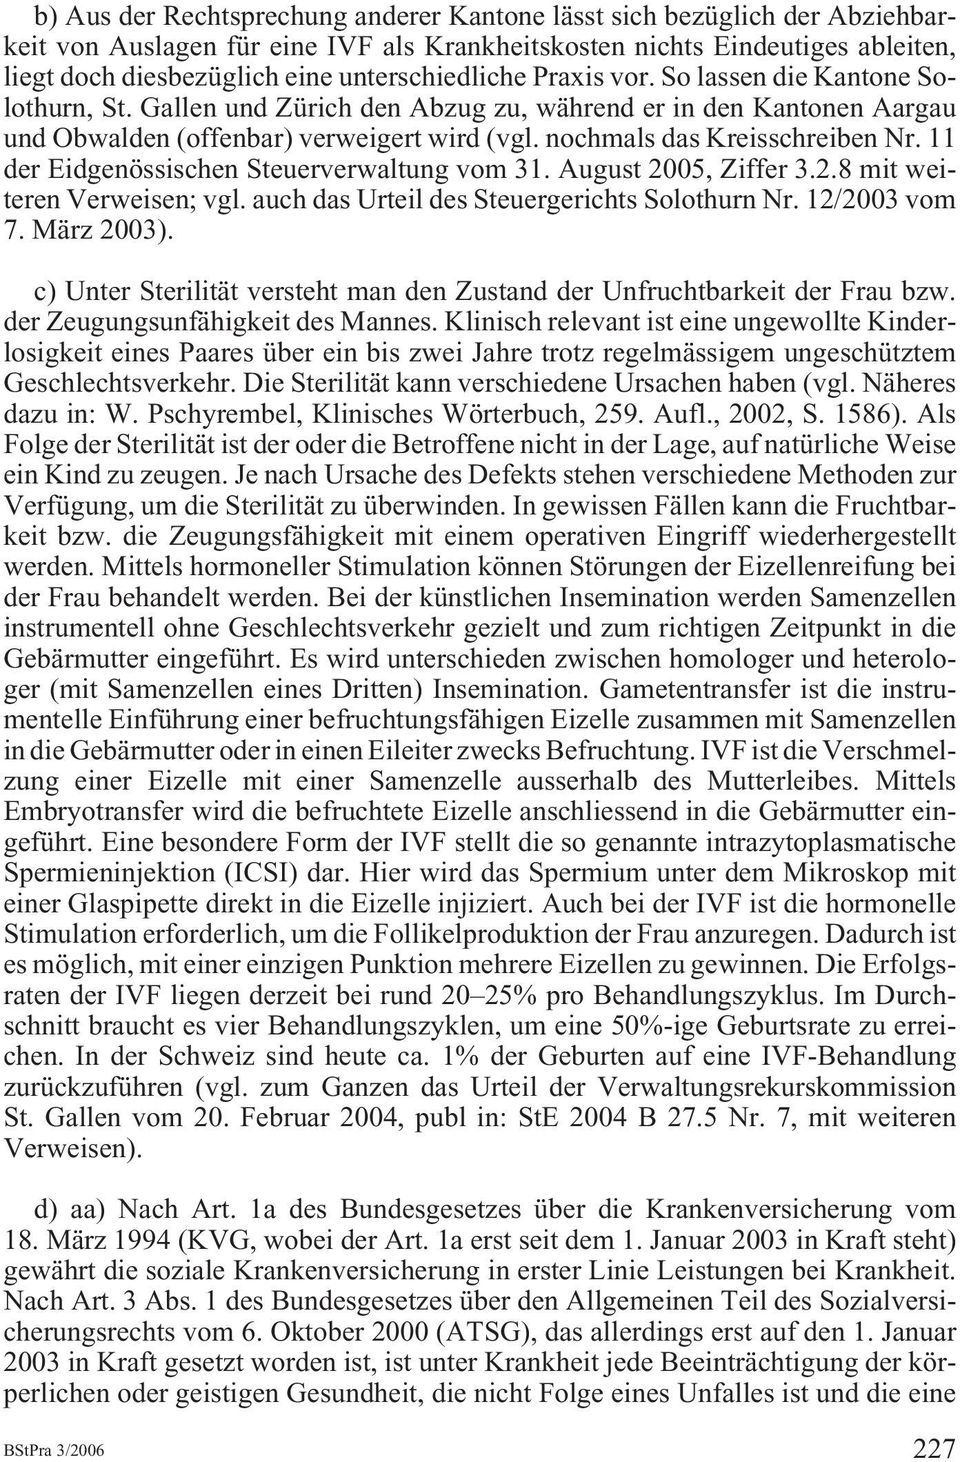 nochmals das Kreisschreiben Nr. 11 der Eidgenössischen Steuerverwaltung vom 31. August 2005, Ziffer 3.2.8 mit weiteren Verweisen; vgl. auch das Urteil des Steuergerichts Solothurn Nr. 12/2003 vom 7.